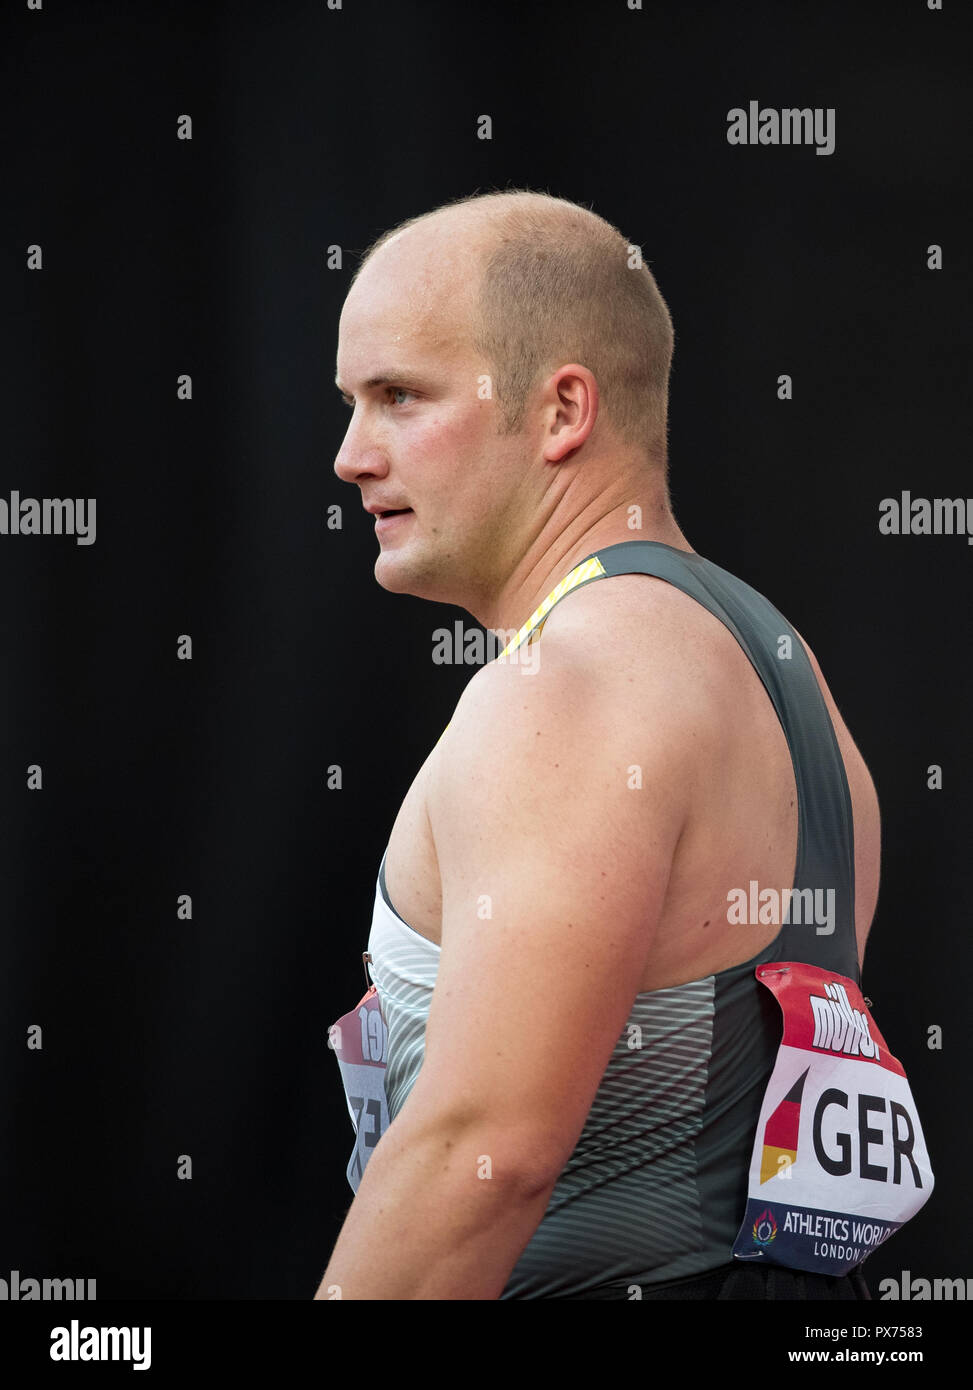 Johannes Bichler von Deutschland (Hammer Throw) Während der Leichtathletik WM 2018 bei den Olympischen Park, London, England am 15. Juli 2018. Foto von Andy Zeile Stockfoto